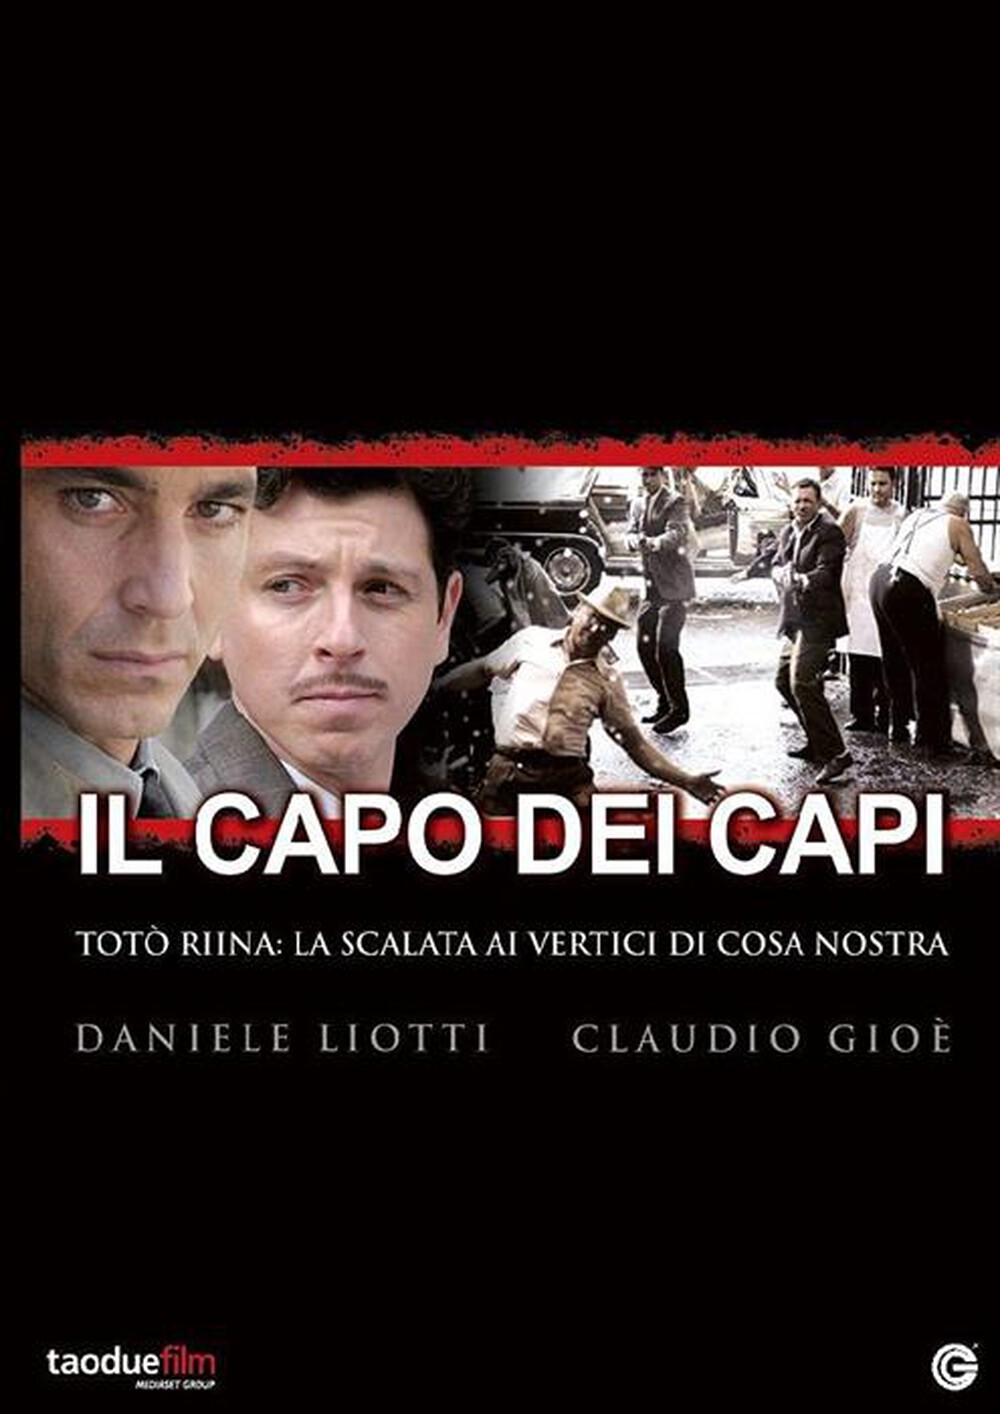 "TaoDueFilm - Capo Dei Capi (Il) (3 Dvd)"